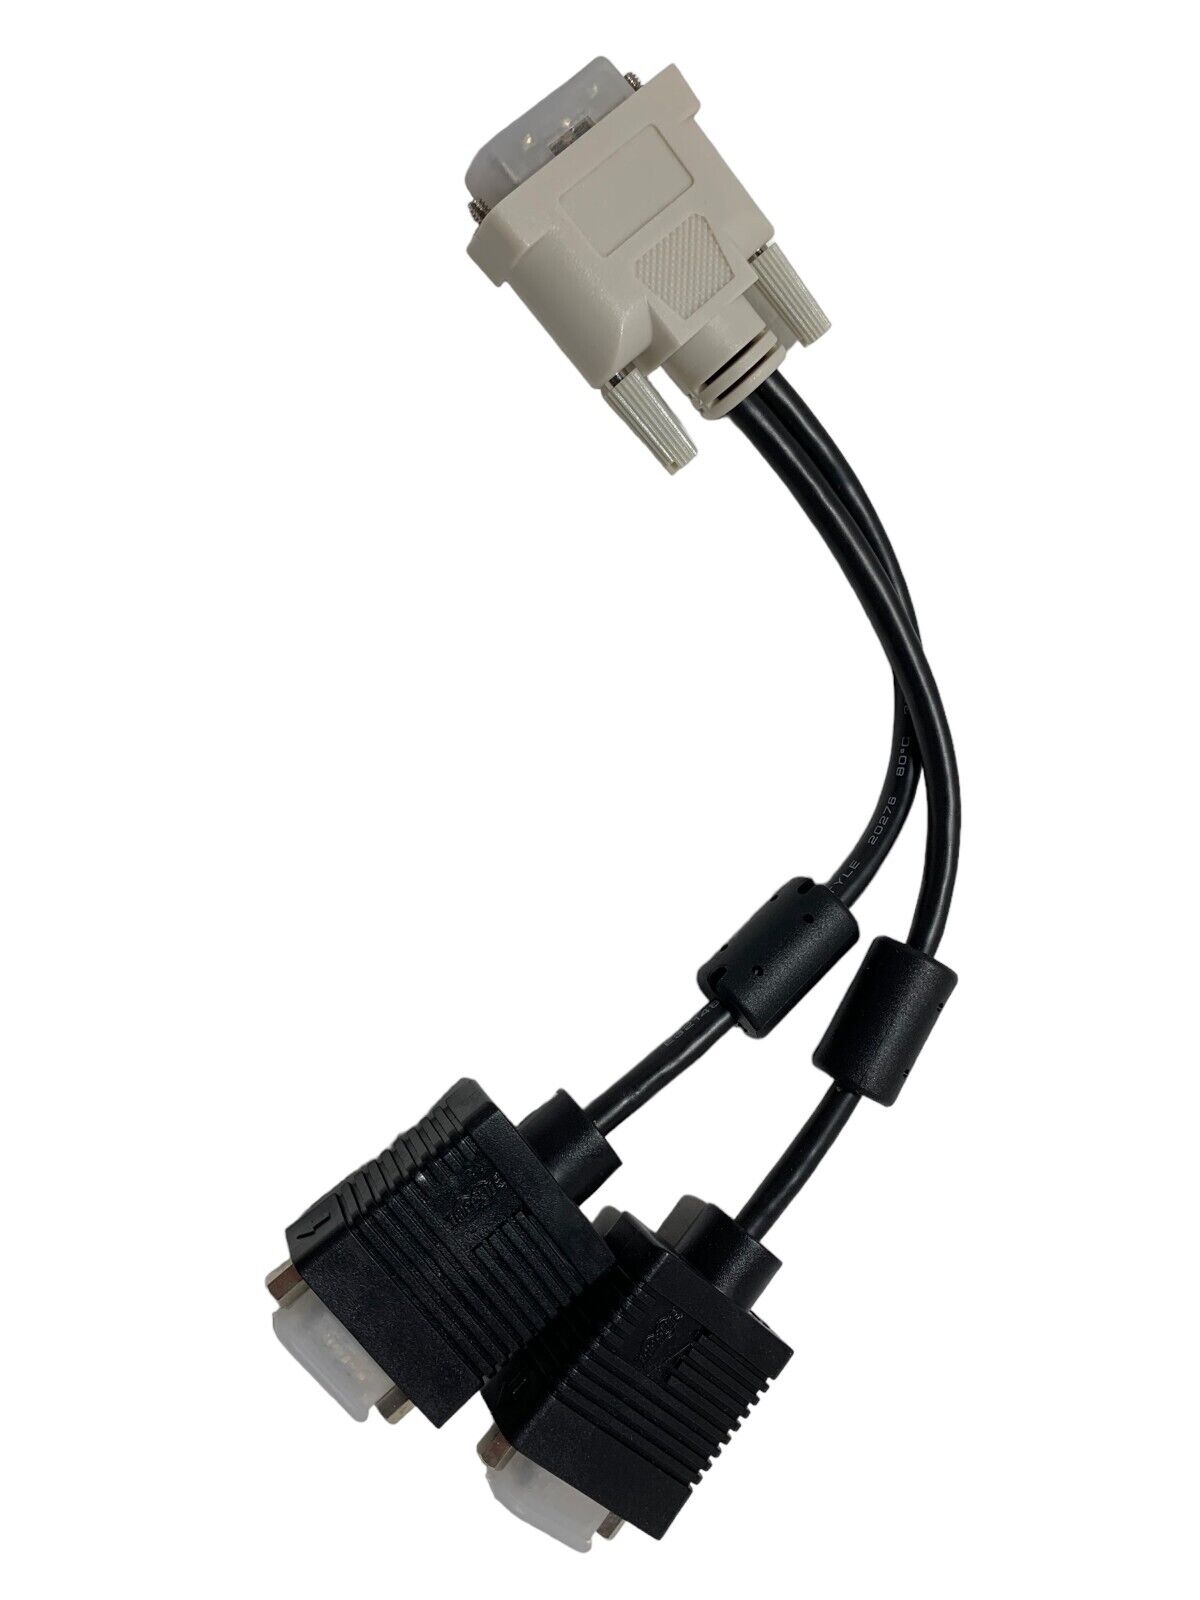 TRIPP LITE - PRO AV P120-001-2 1FT DVI TO VGA Y SPLITTER CABLE ADAPTER